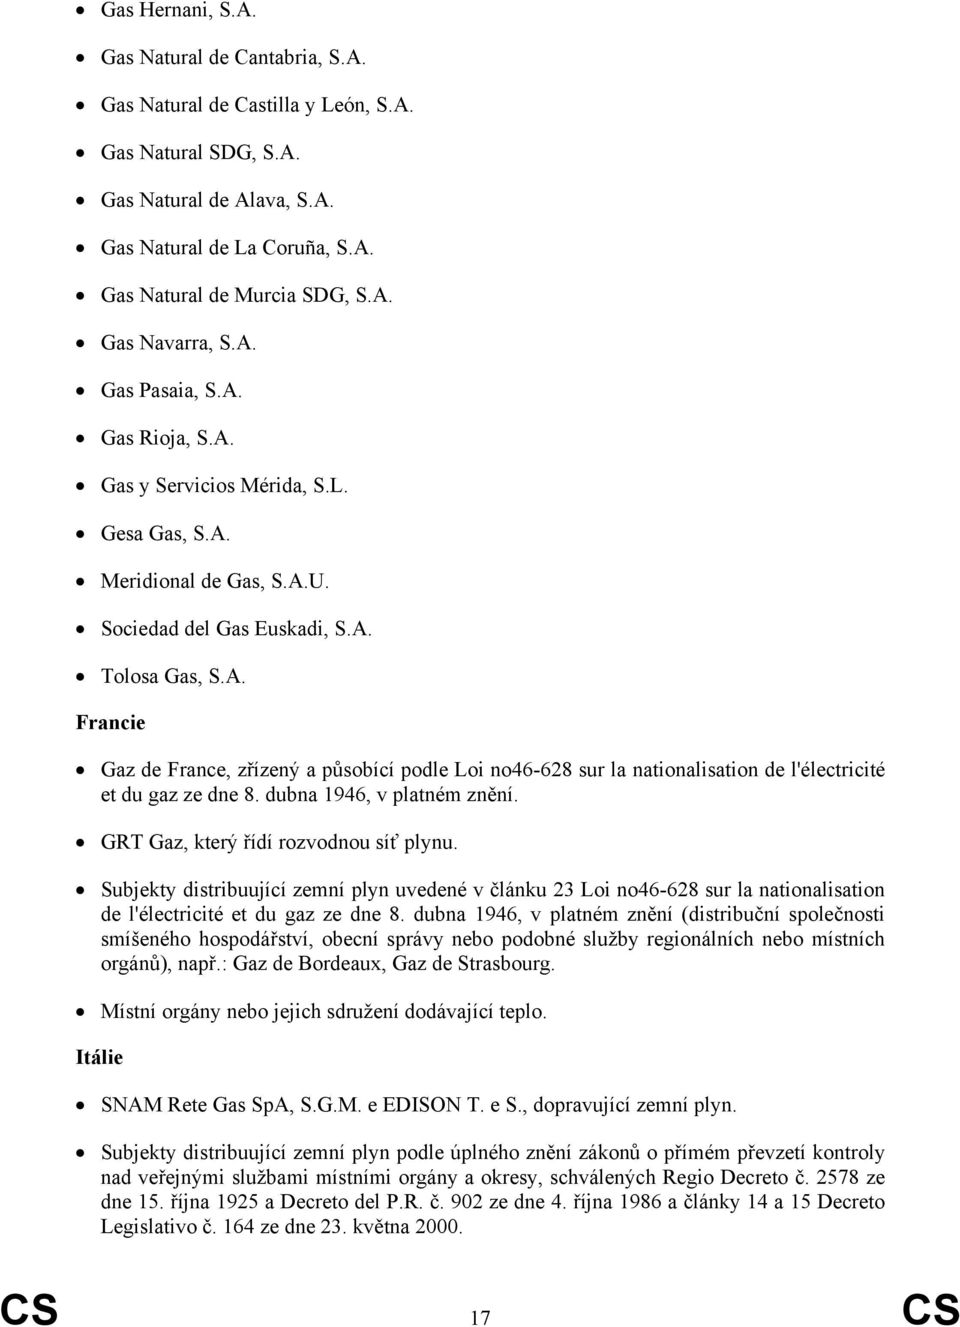 dubna 1946, v platném znění. GRT Gaz, který řídí rozvodnou síť plynu. Subjekty distribuující zemní plyn uvedené v článku 23 Loi no46-628 sur la nationalisation de l'électricité et du gaz ze dne 8.